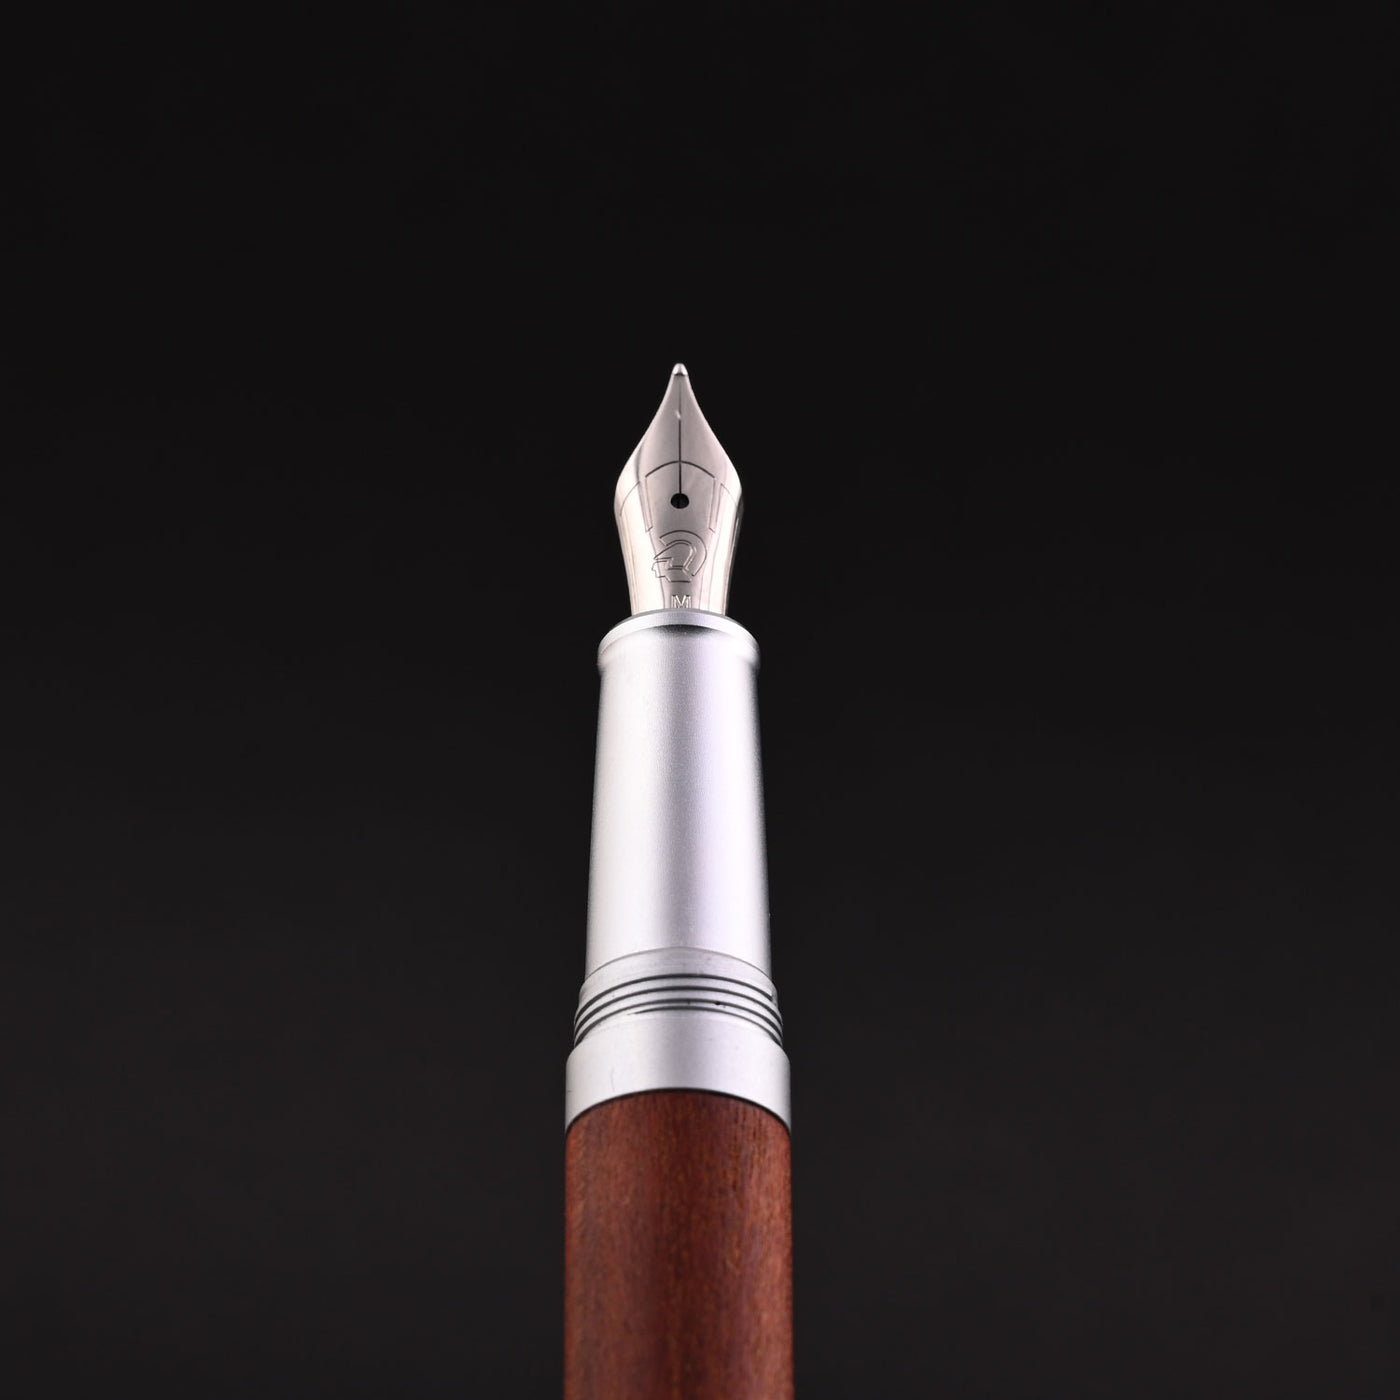 Staedtler Premium Lignum Fountain Pen - Plum Wood CT 6